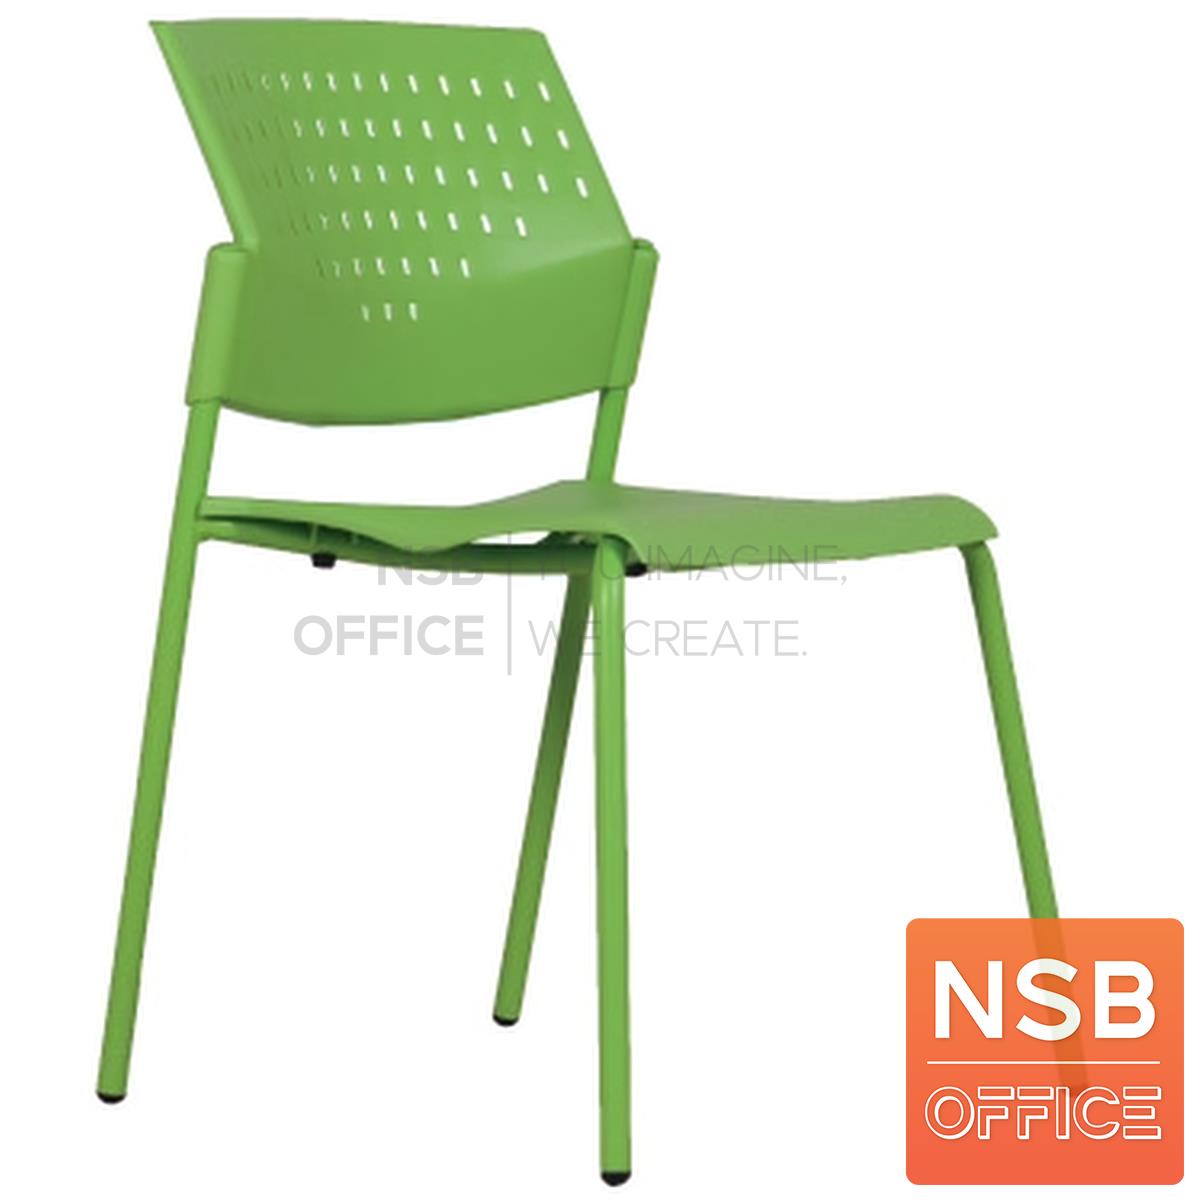 B04A144:เก้าอี้อเนกประสงค์เฟรมโพลี่ รุ่น ms-DG-01  ขาเหล็กพ่นสี